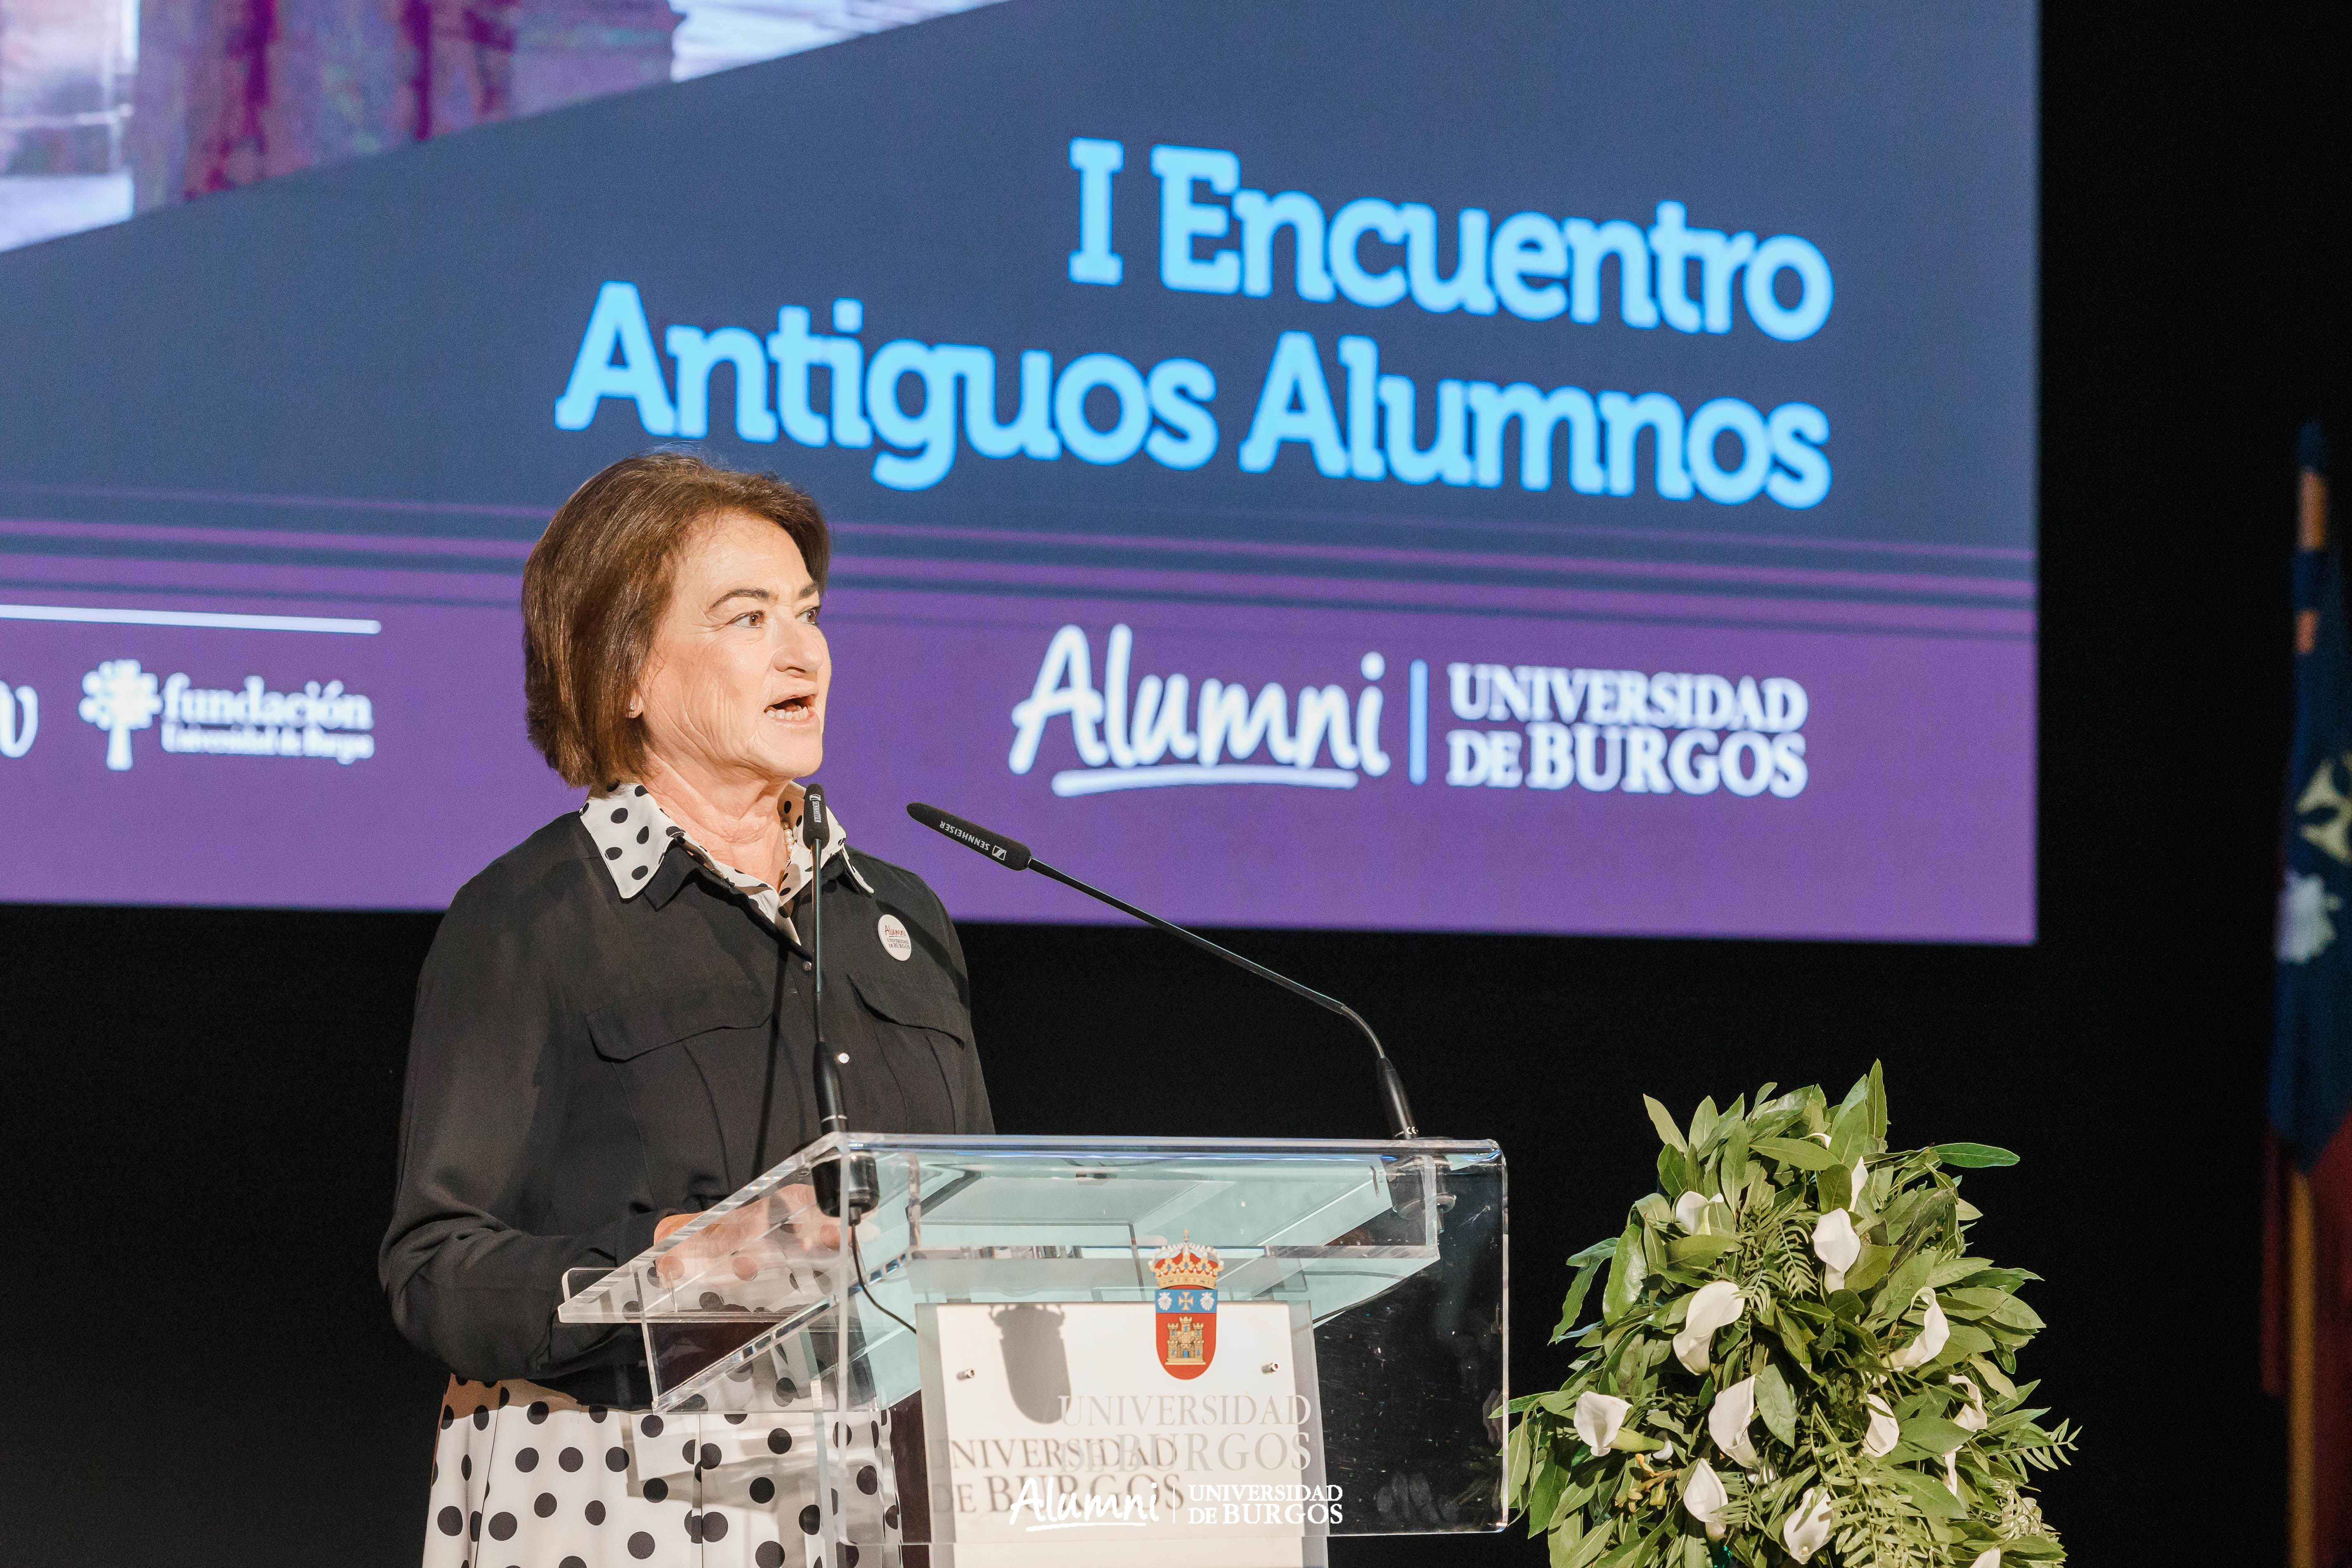 I Encuentro de Antiguos Alumnos de la Universidad de Burgos